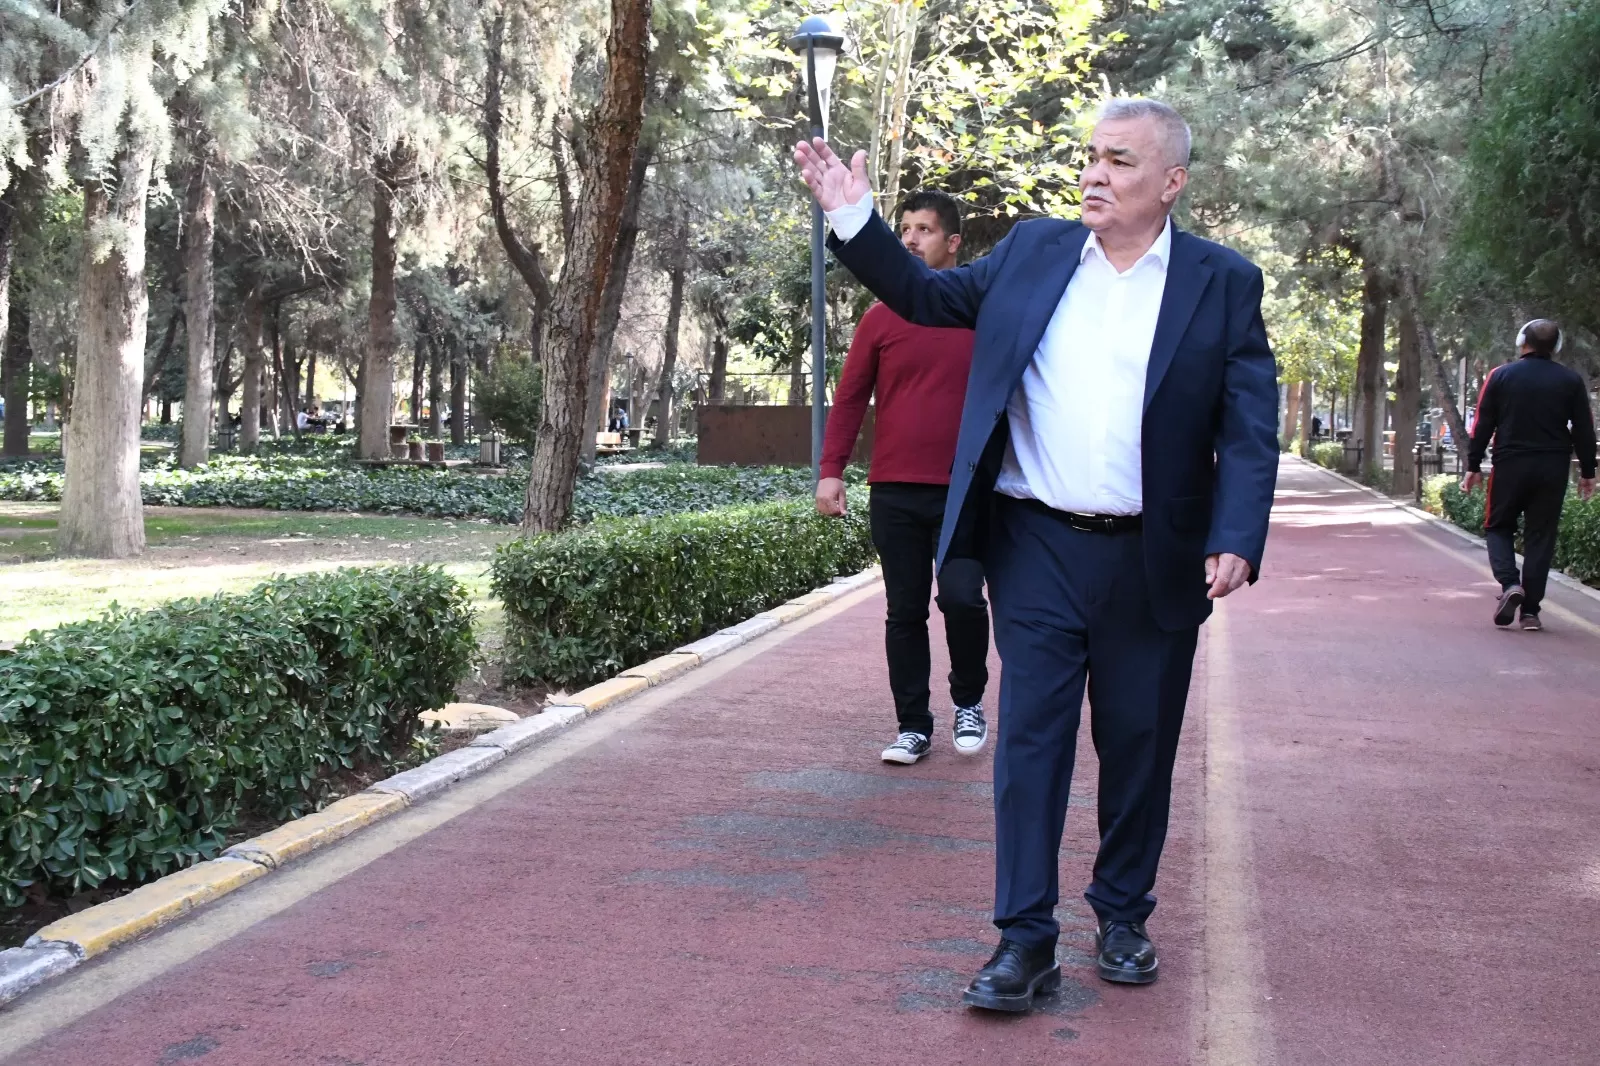 Torbalı Belediye Başkanı Mithat Tekin'in liderliğinde, Park ve Bahçeler Müdürlüğü, yeşil bir Torbalı için göz alıcı bir çalışma temposu sürdürüyor.